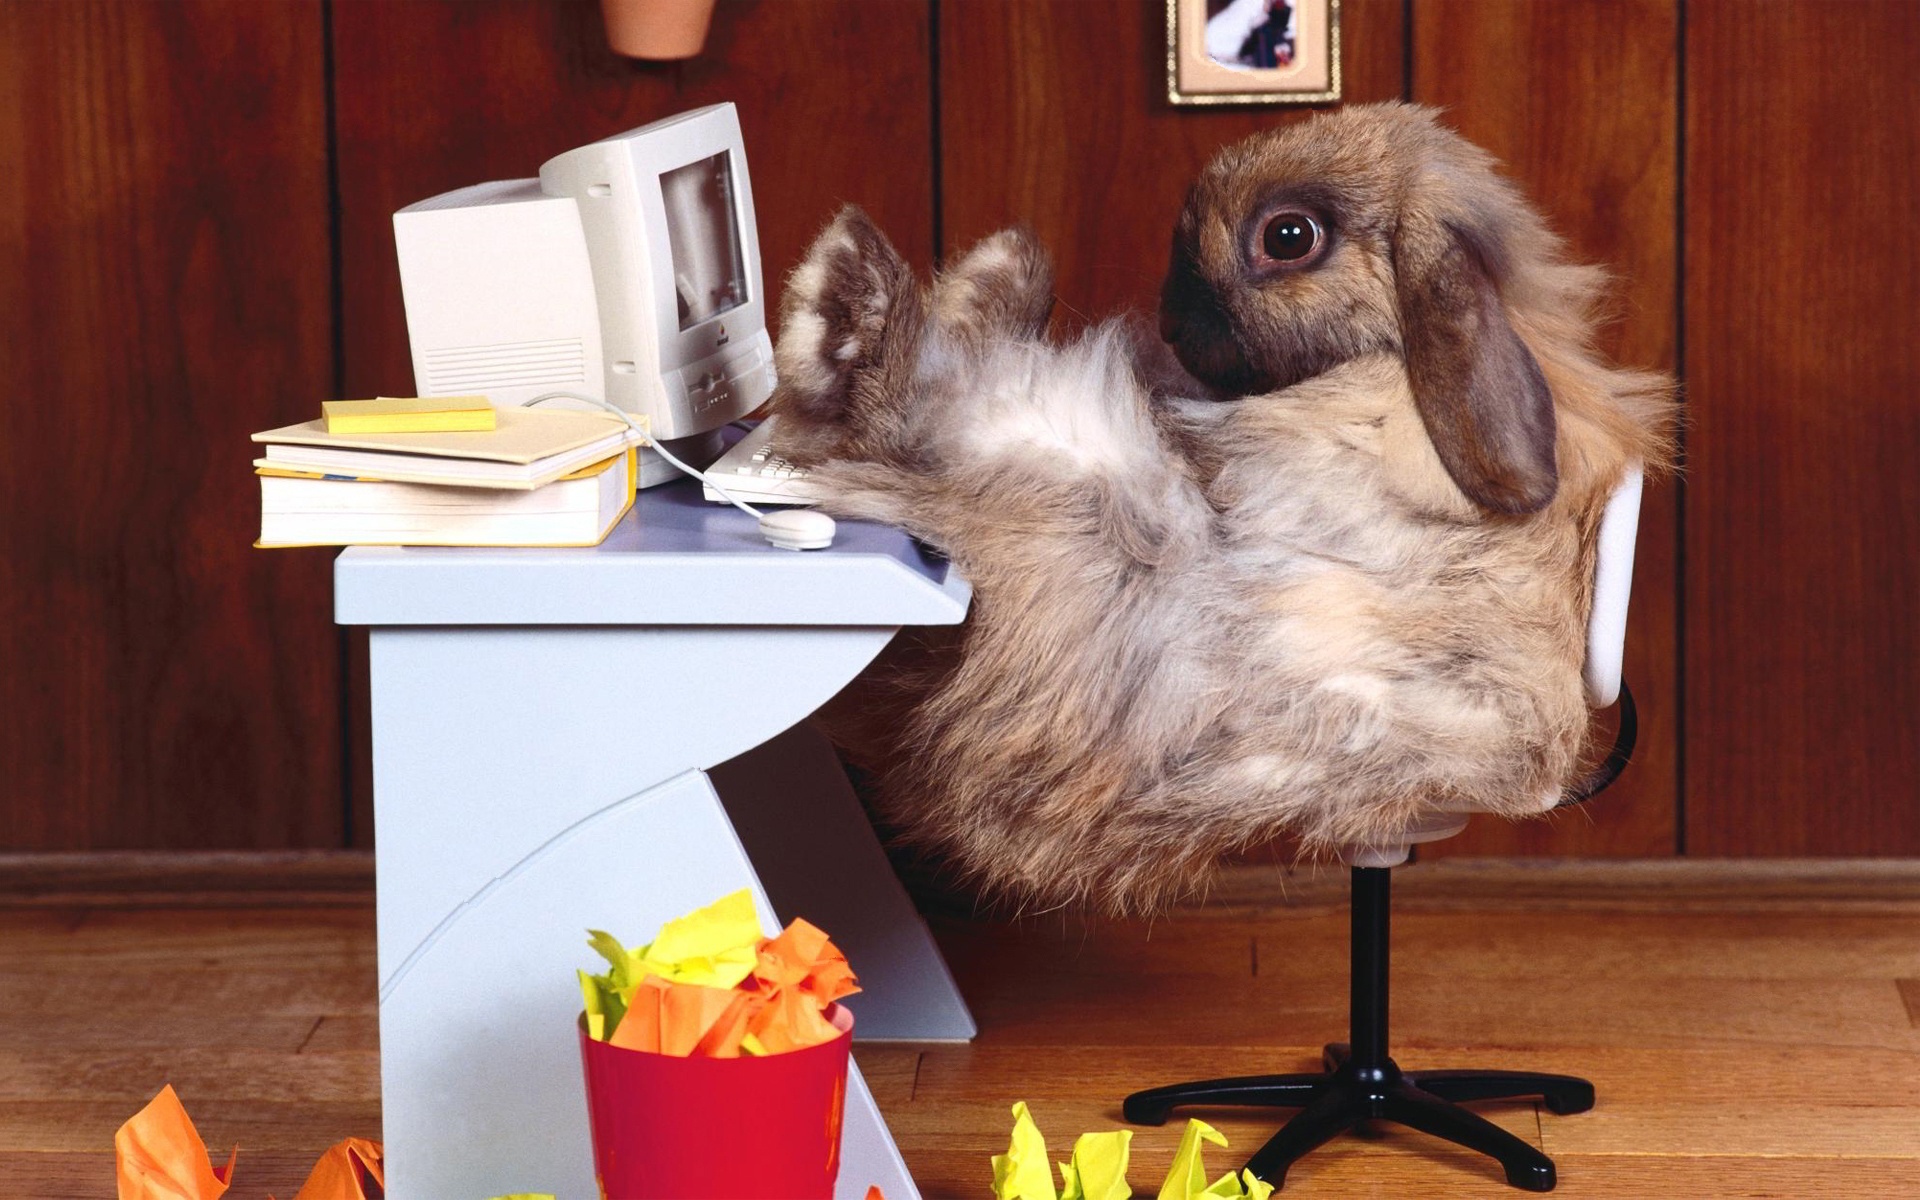 Rabbit at computer desk. 